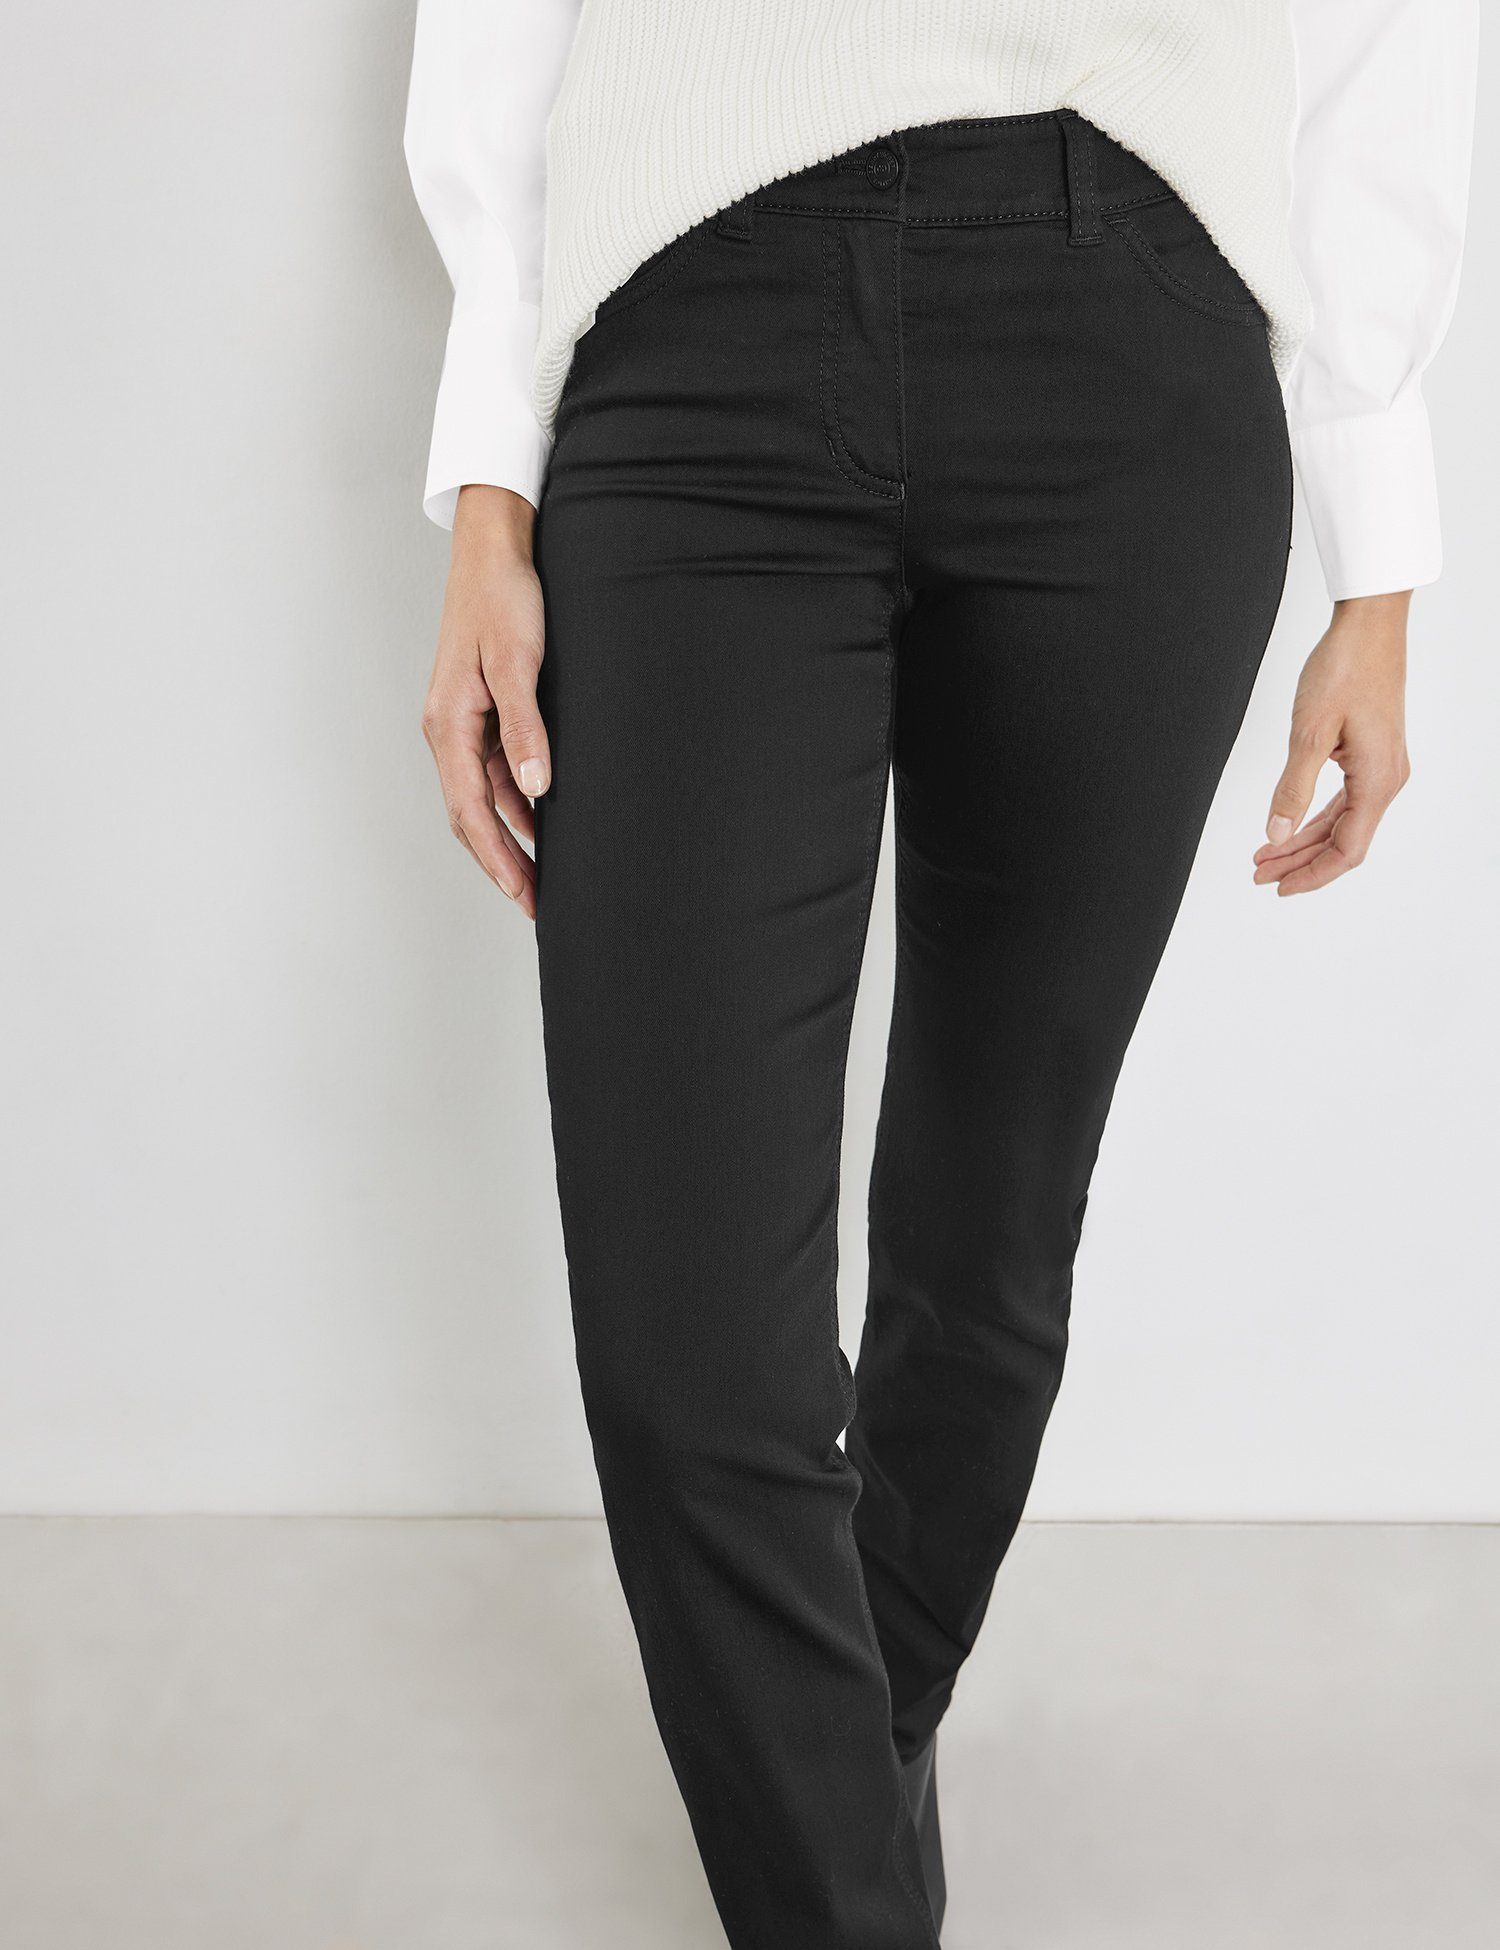 Hose denim Jeans GERRY black black Slim-fit-Jeans WEBER